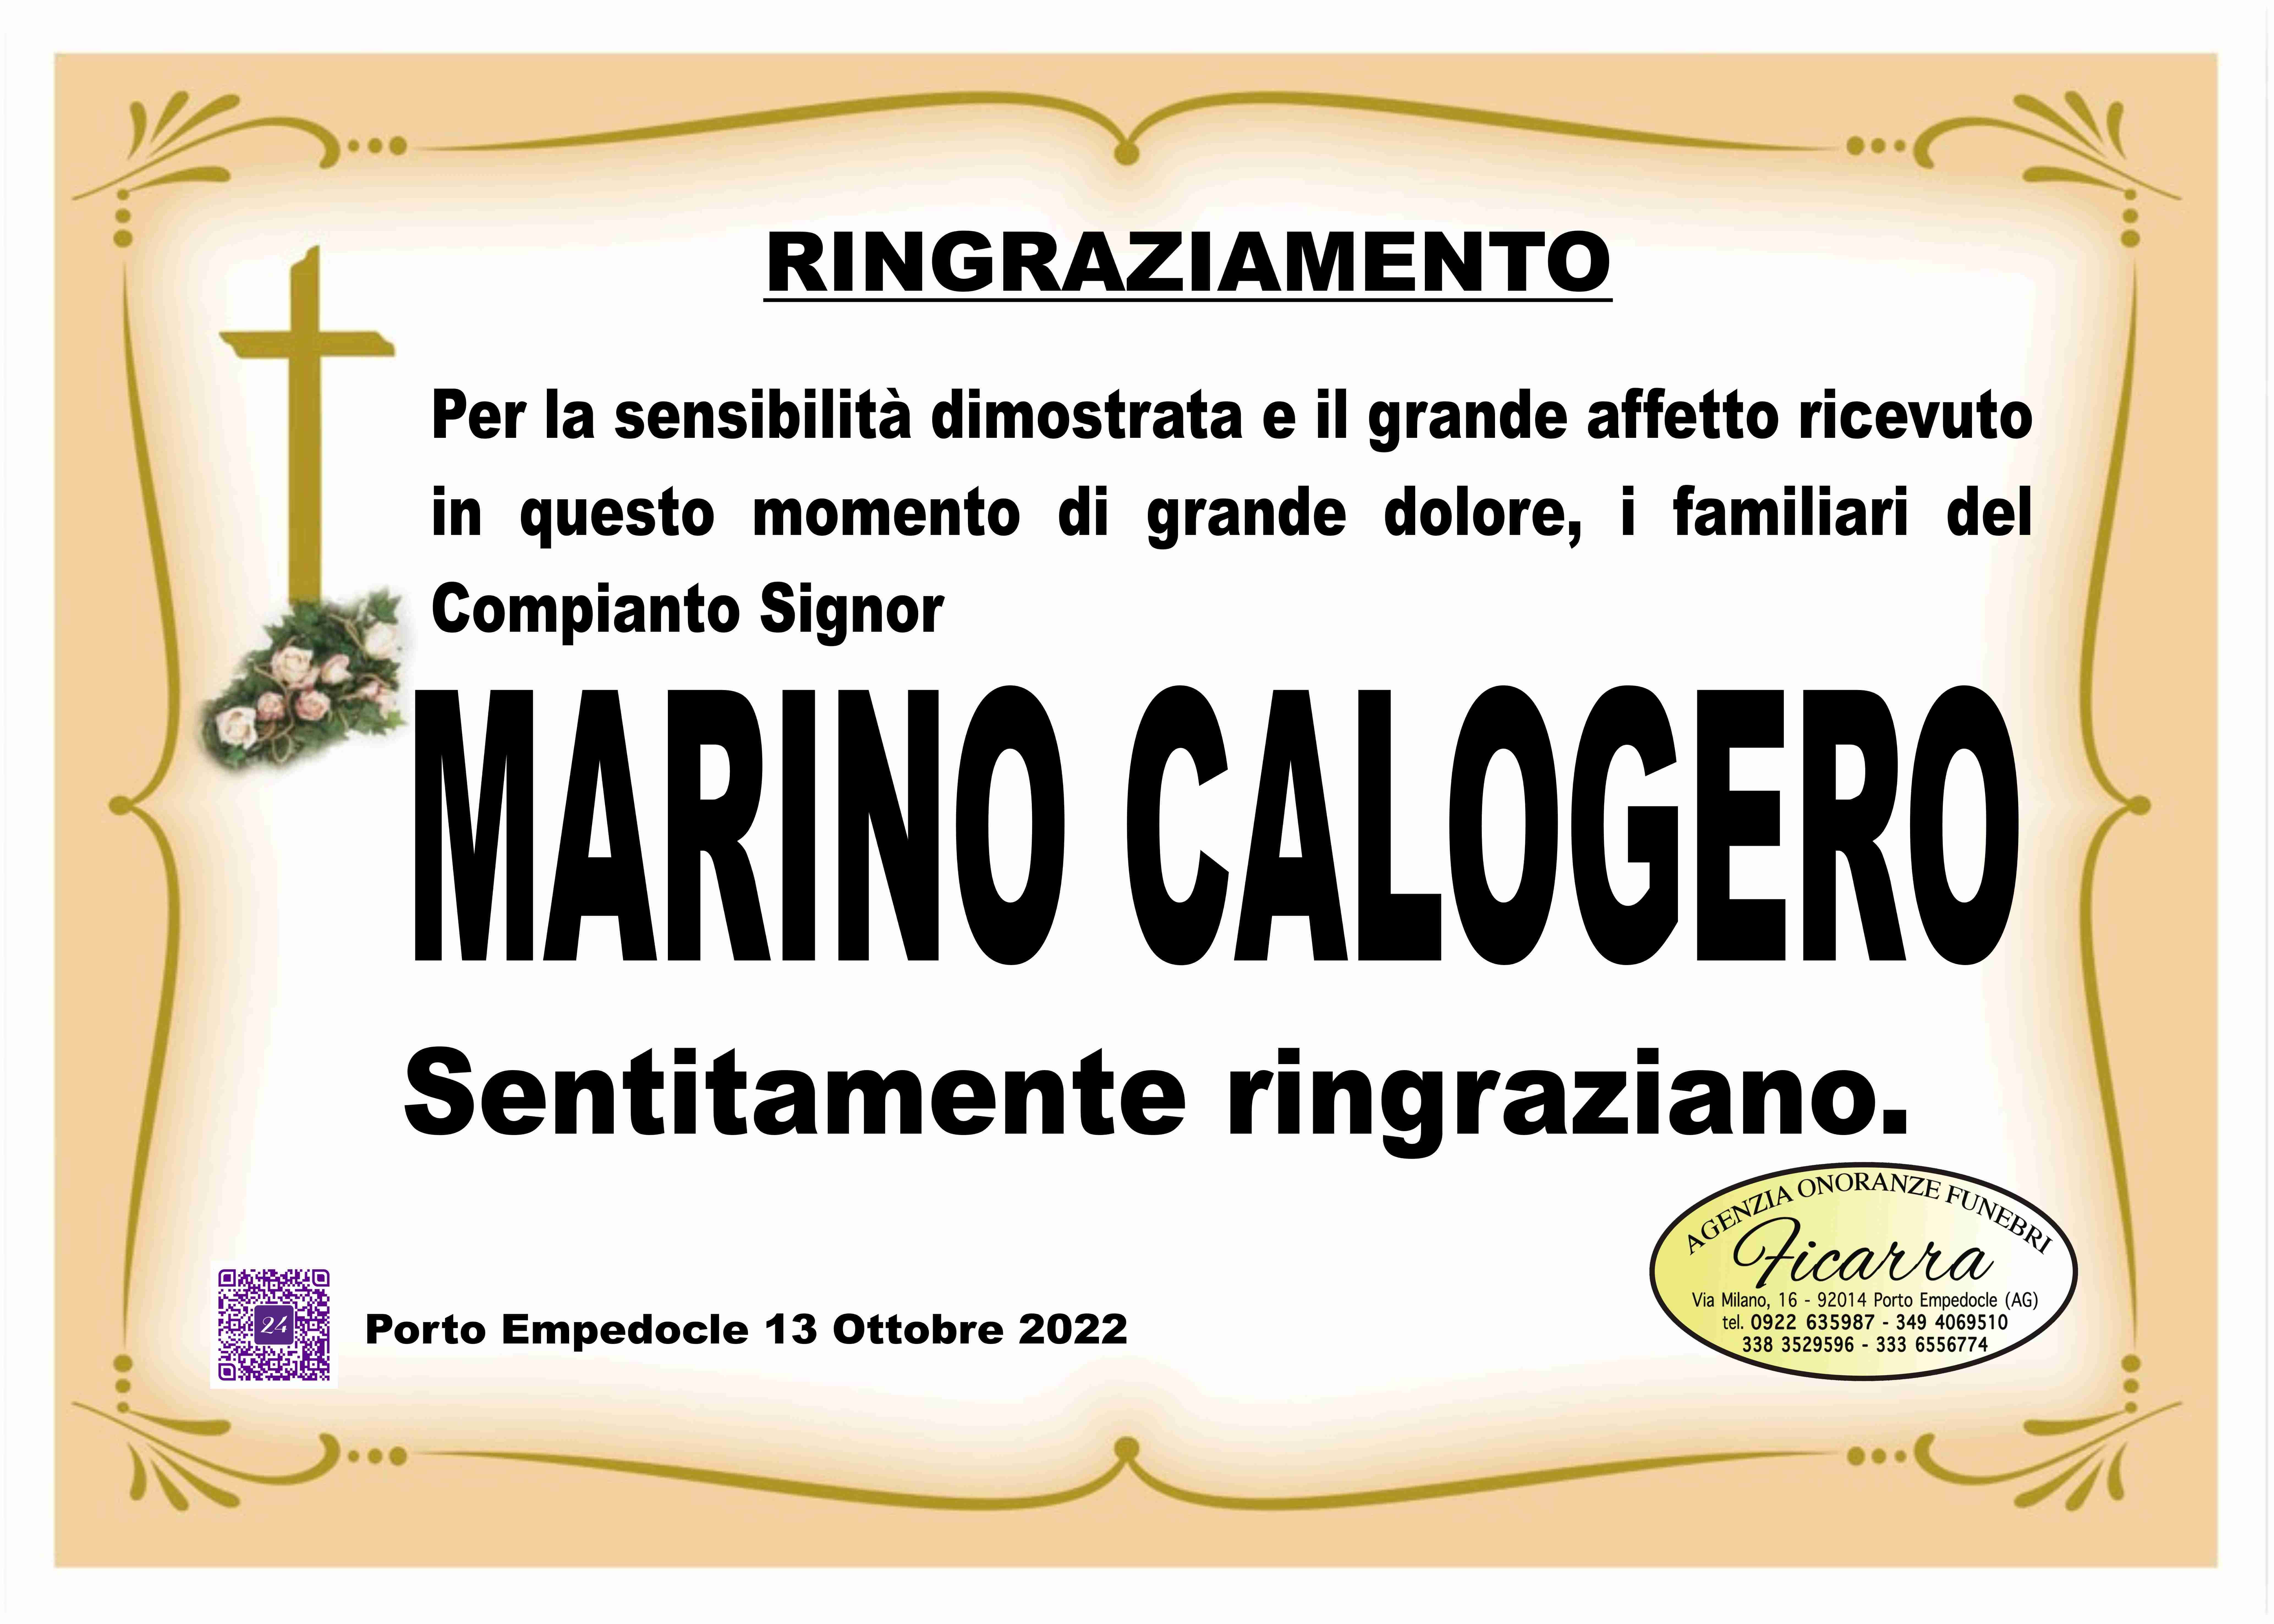 Calogero Marino